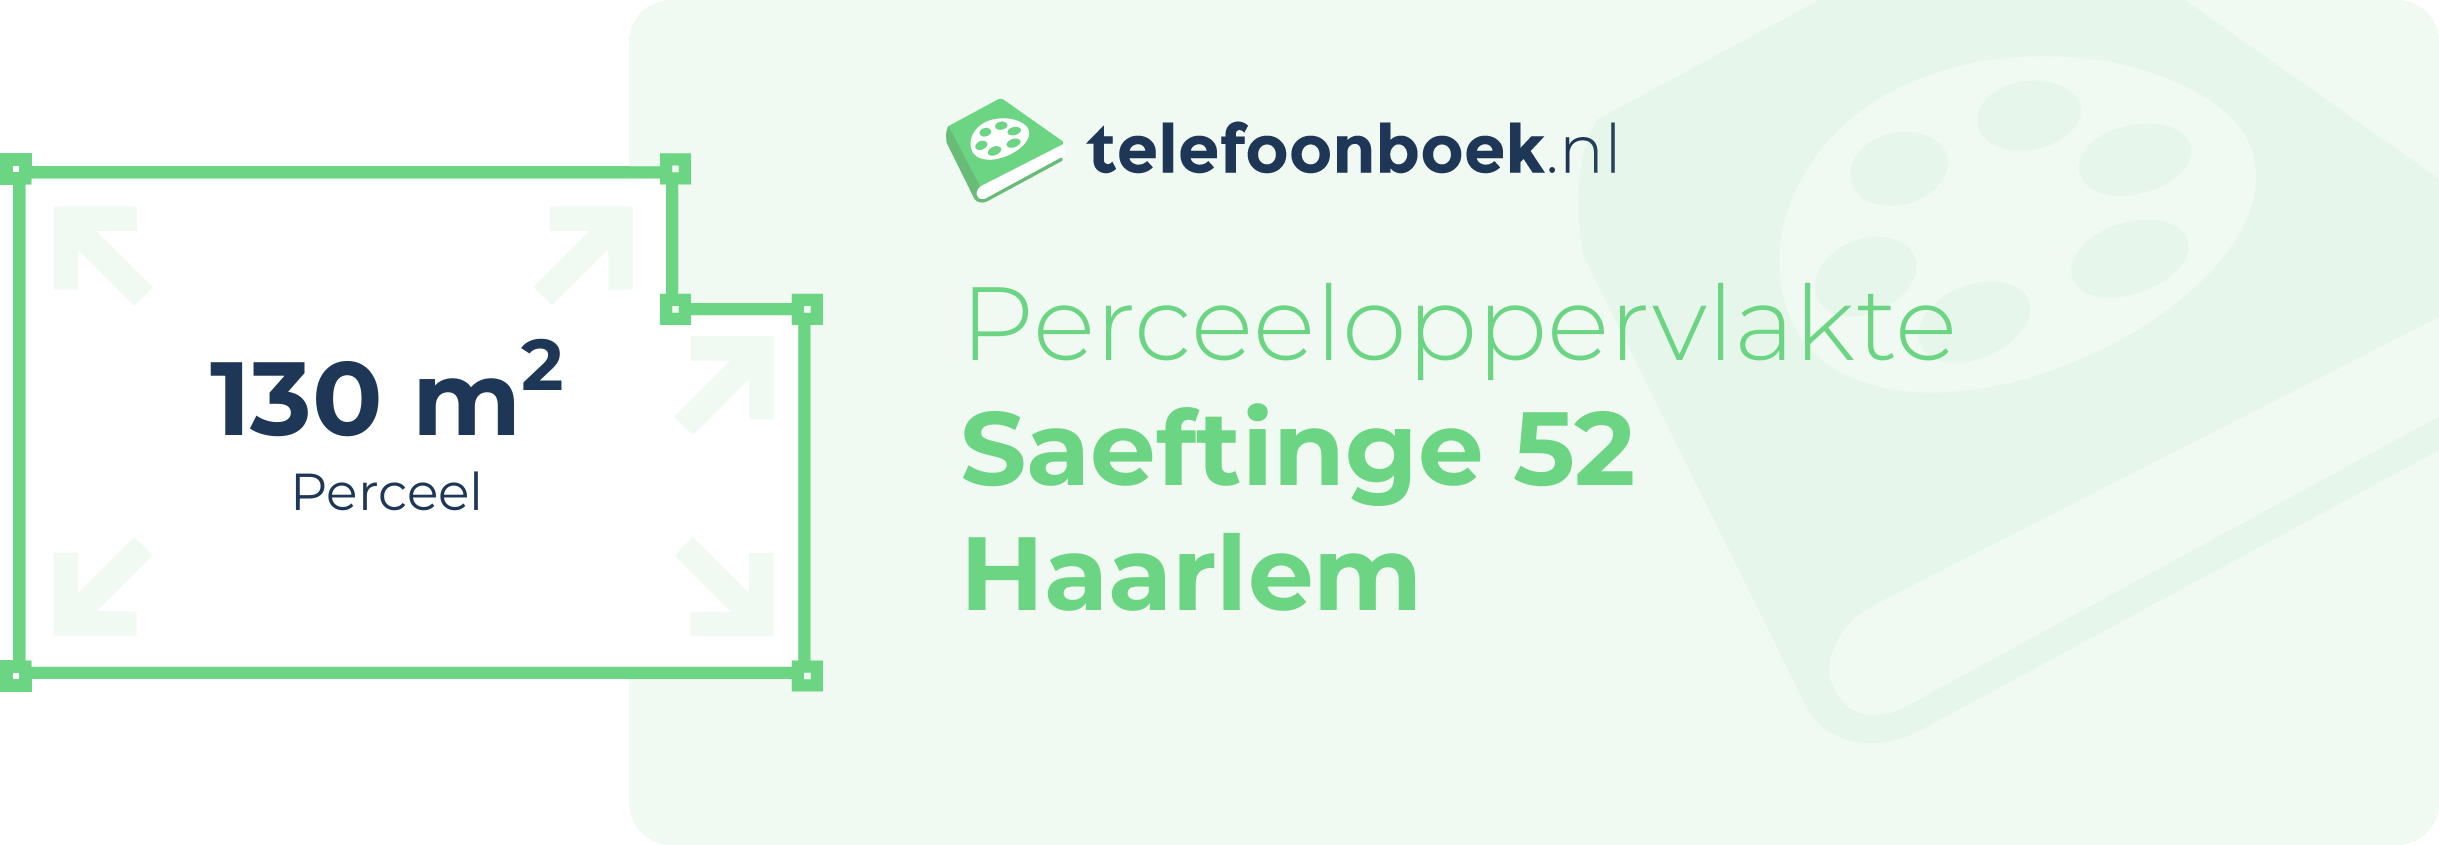 Perceeloppervlakte Saeftinge 52 Haarlem